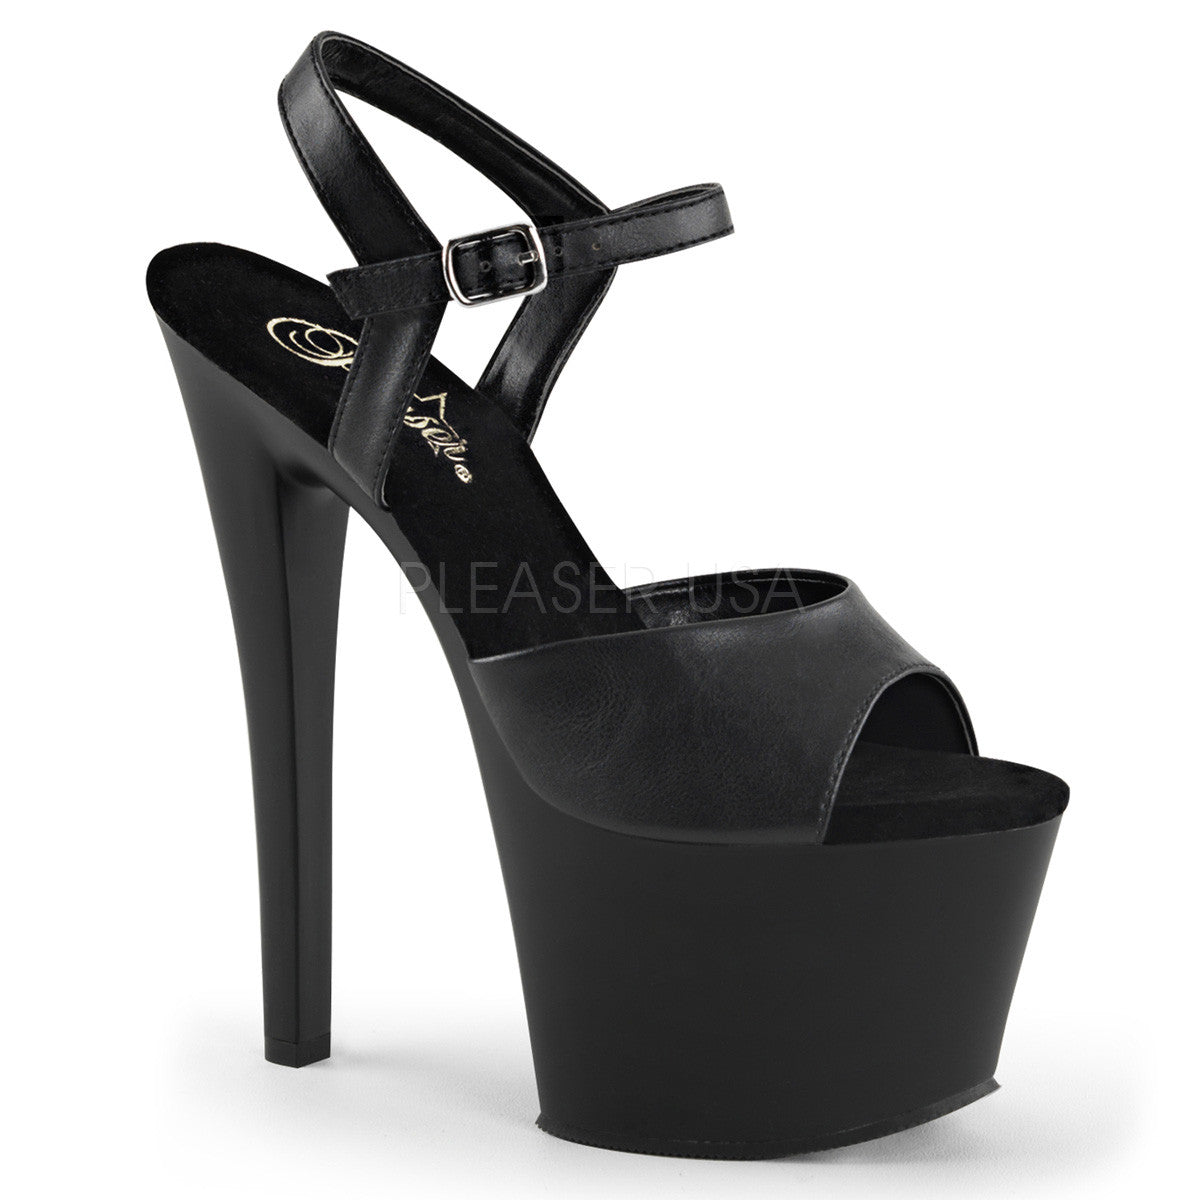 Pleaser SKY-309 Black Leather Platform 7 Inch Heel – Shoecup.com